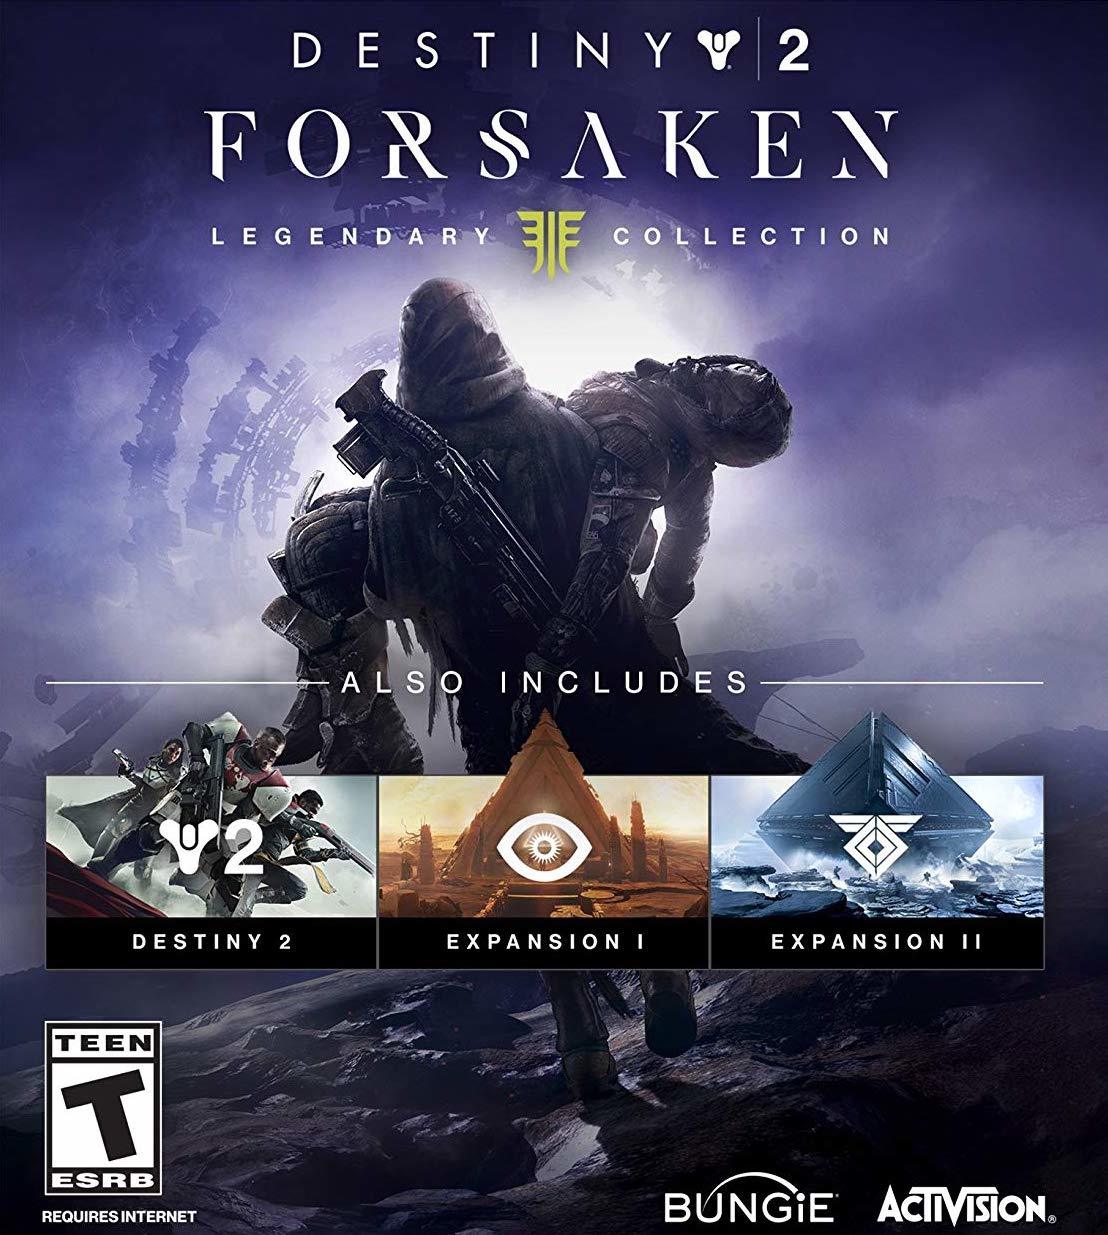 Destiny 2: Forsaken (Xbox One, PS4, PC) Release Date / Pre-Order Guide - GameSpot